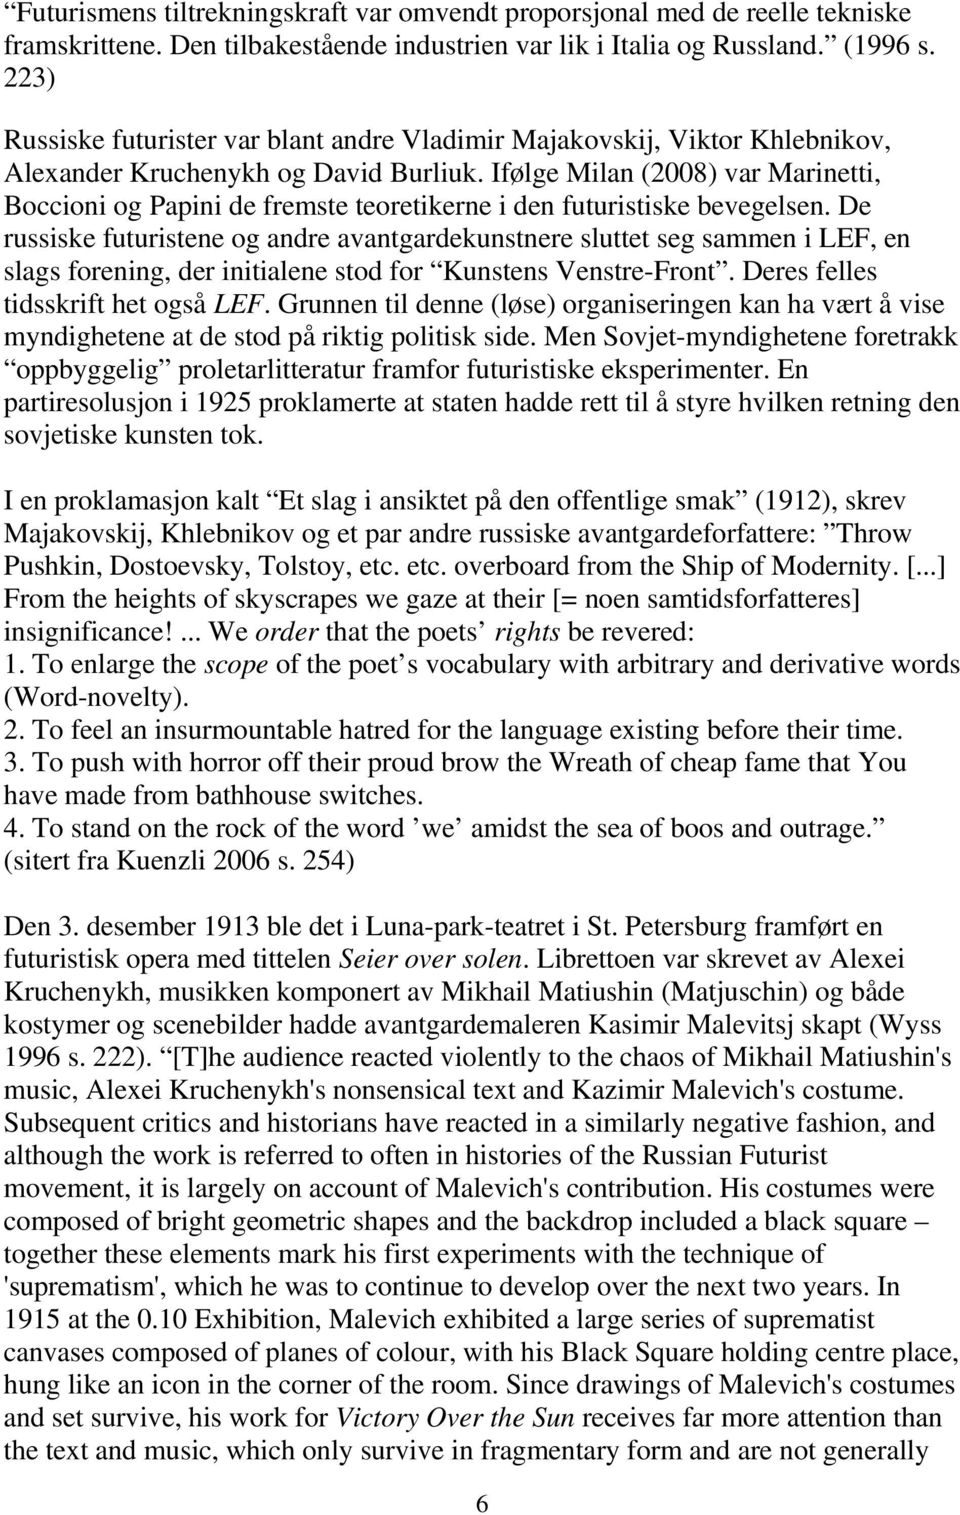 Ifølge Milan (2008) var Marinetti, Boccioni og Papini de fremste teoretikerne i den futuristiske bevegelsen.